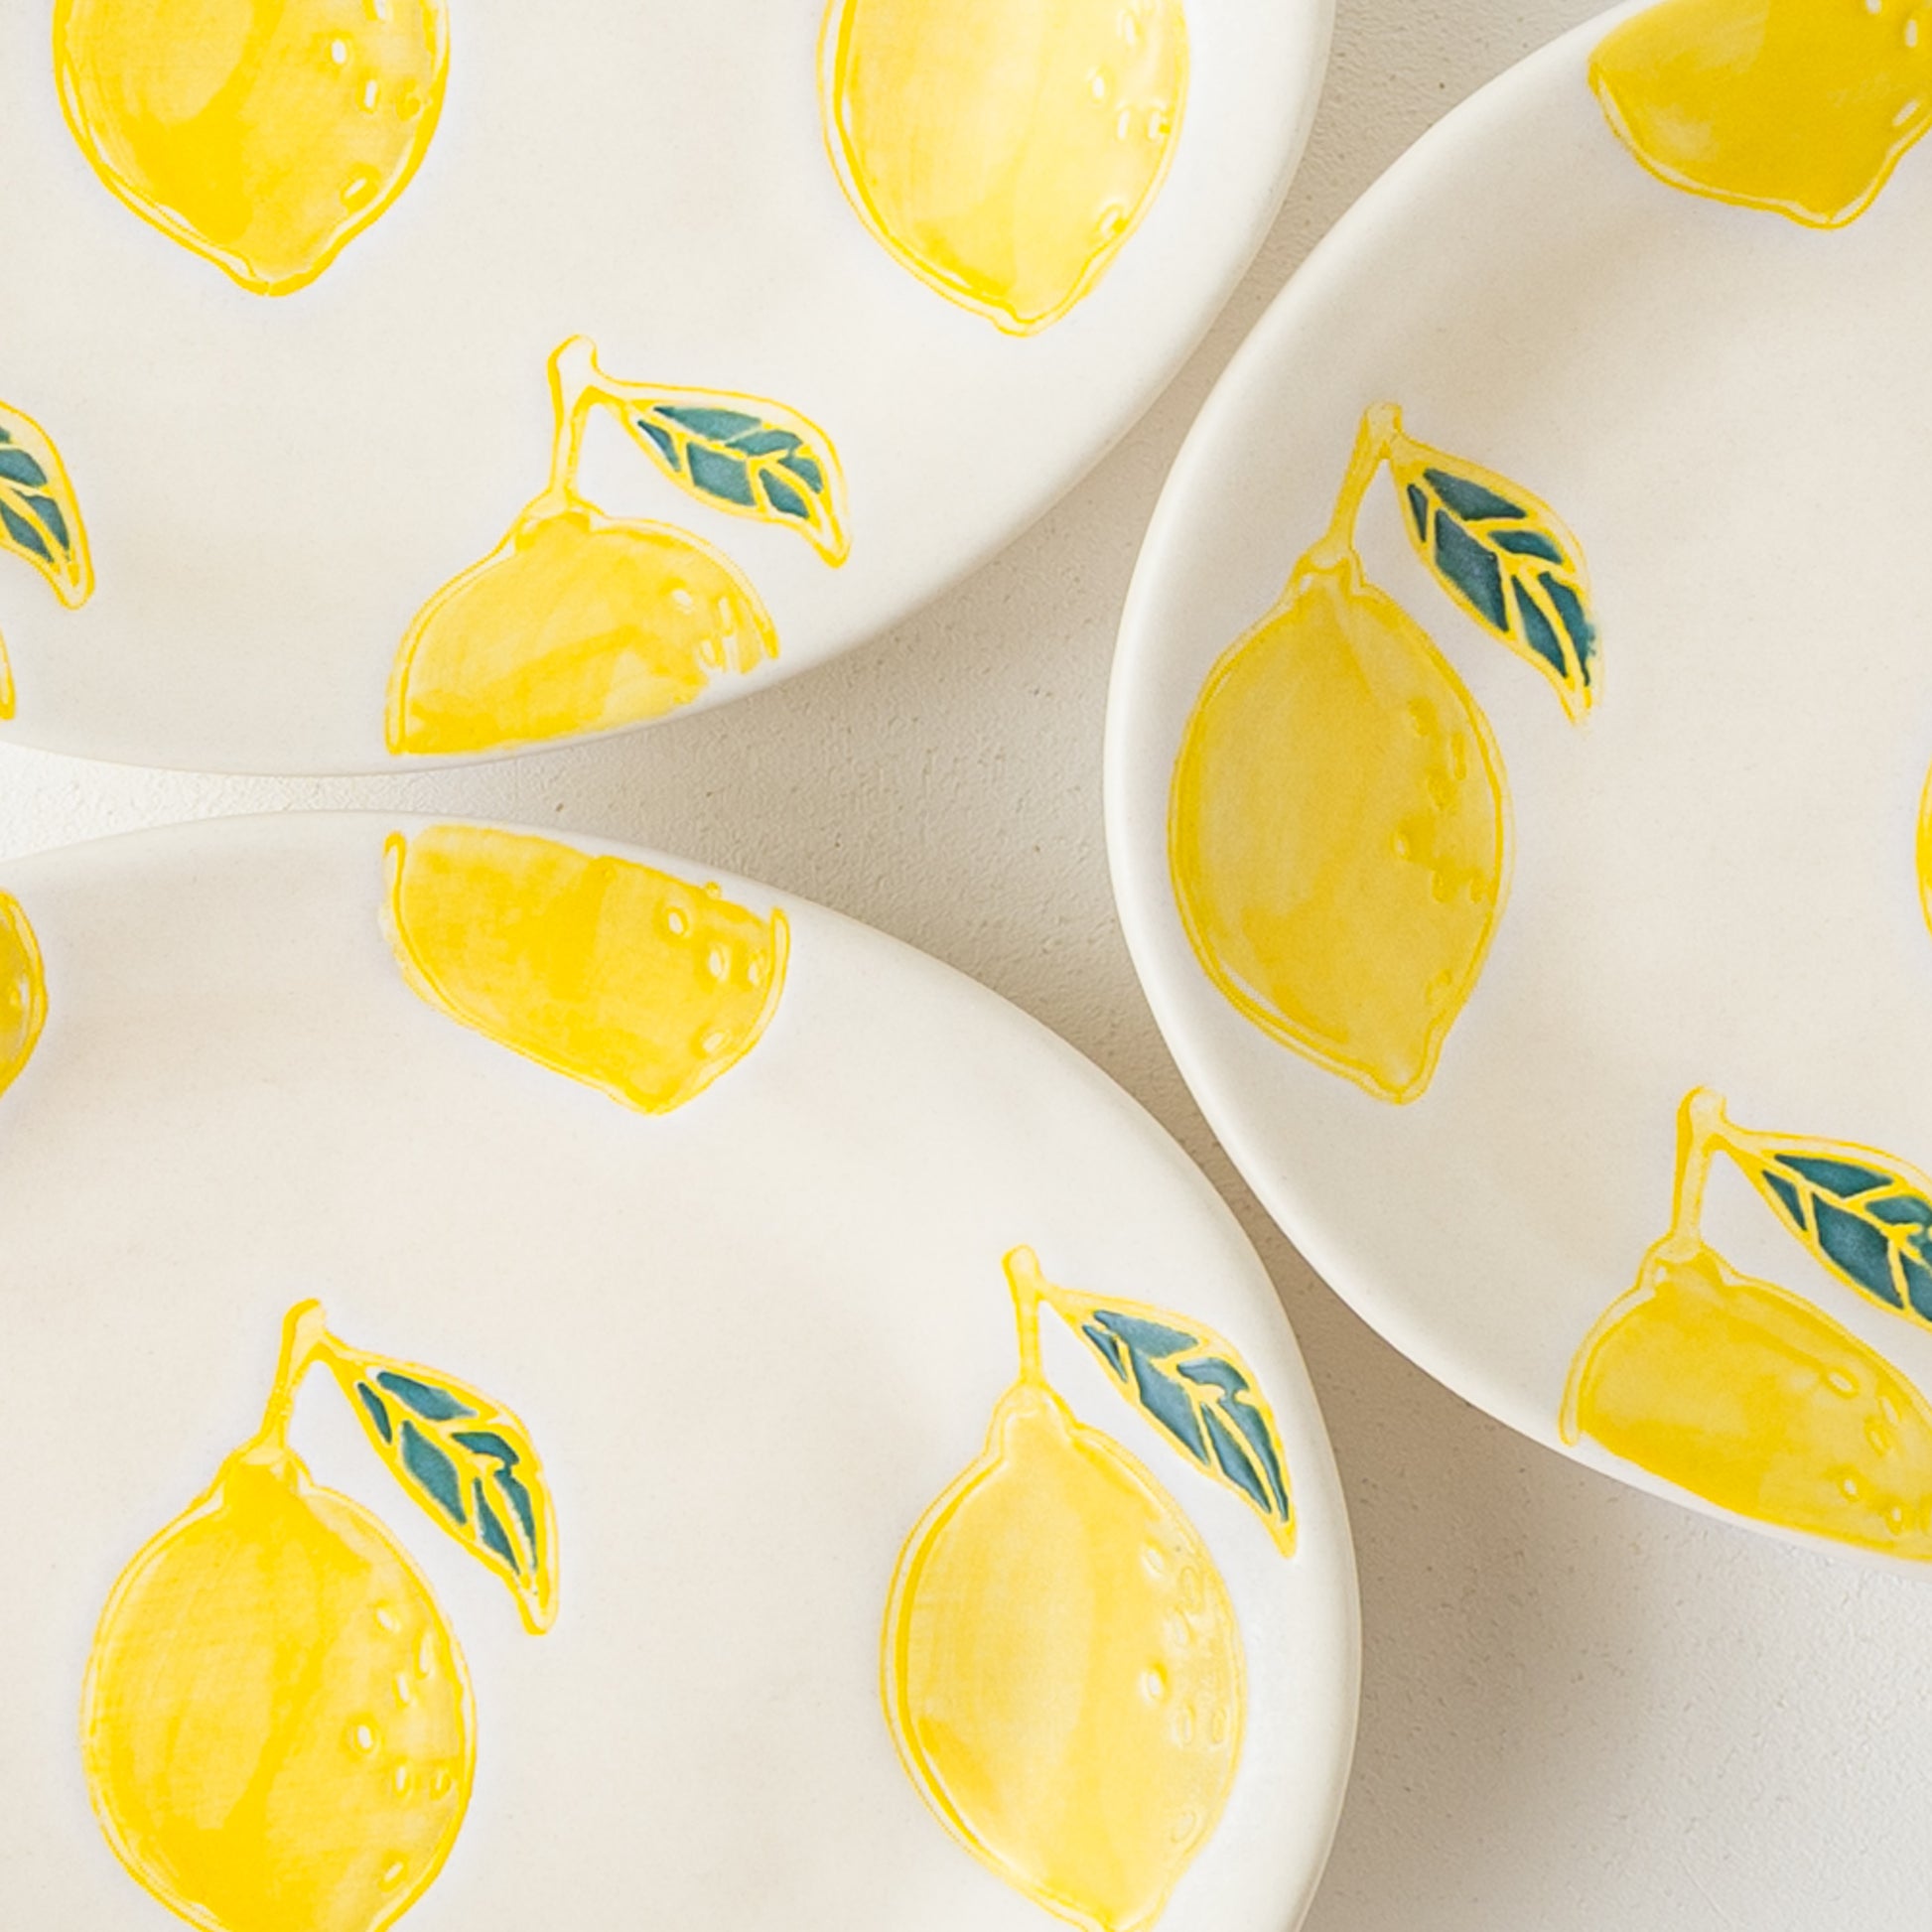 やさしい風合いのレモン柄に温かみを感じる波佐見焼の楕円皿